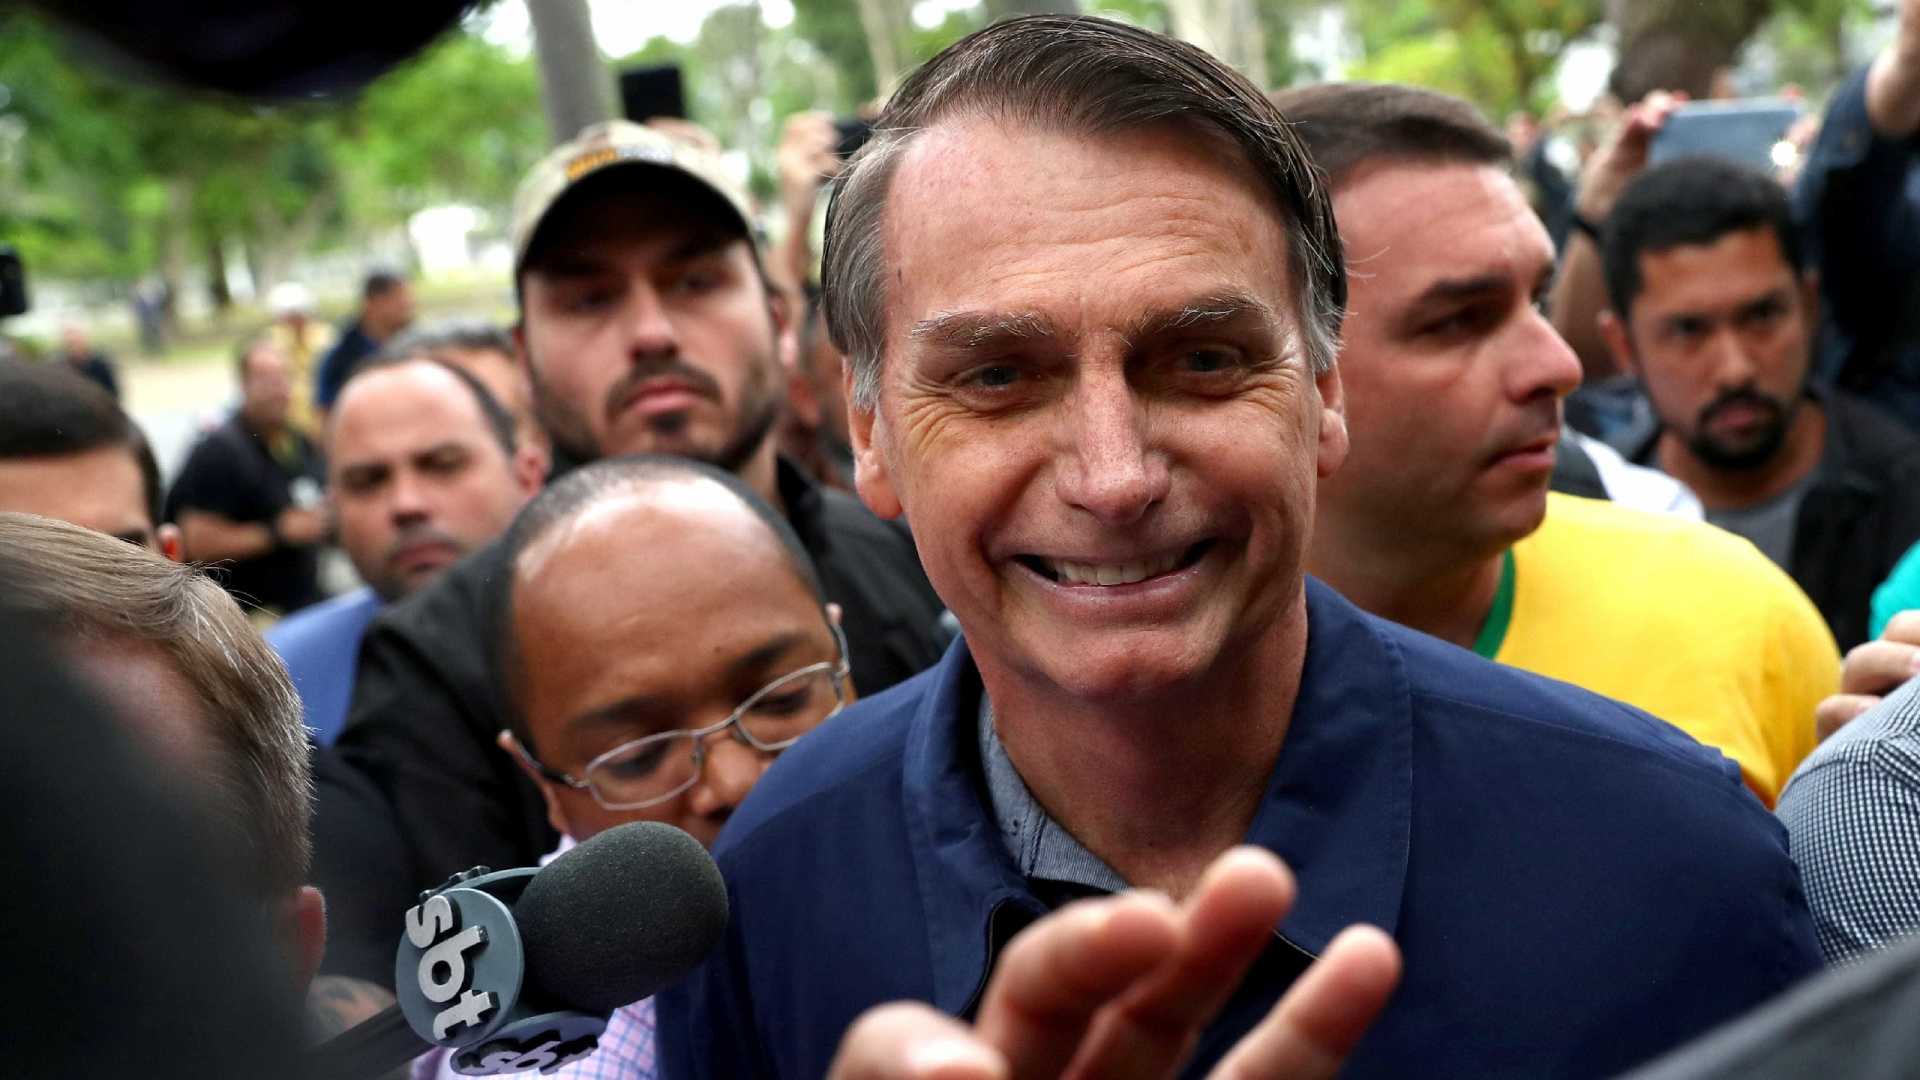 Em rádios, Bolsonaro fala sobre participação nos debates para 2º turno